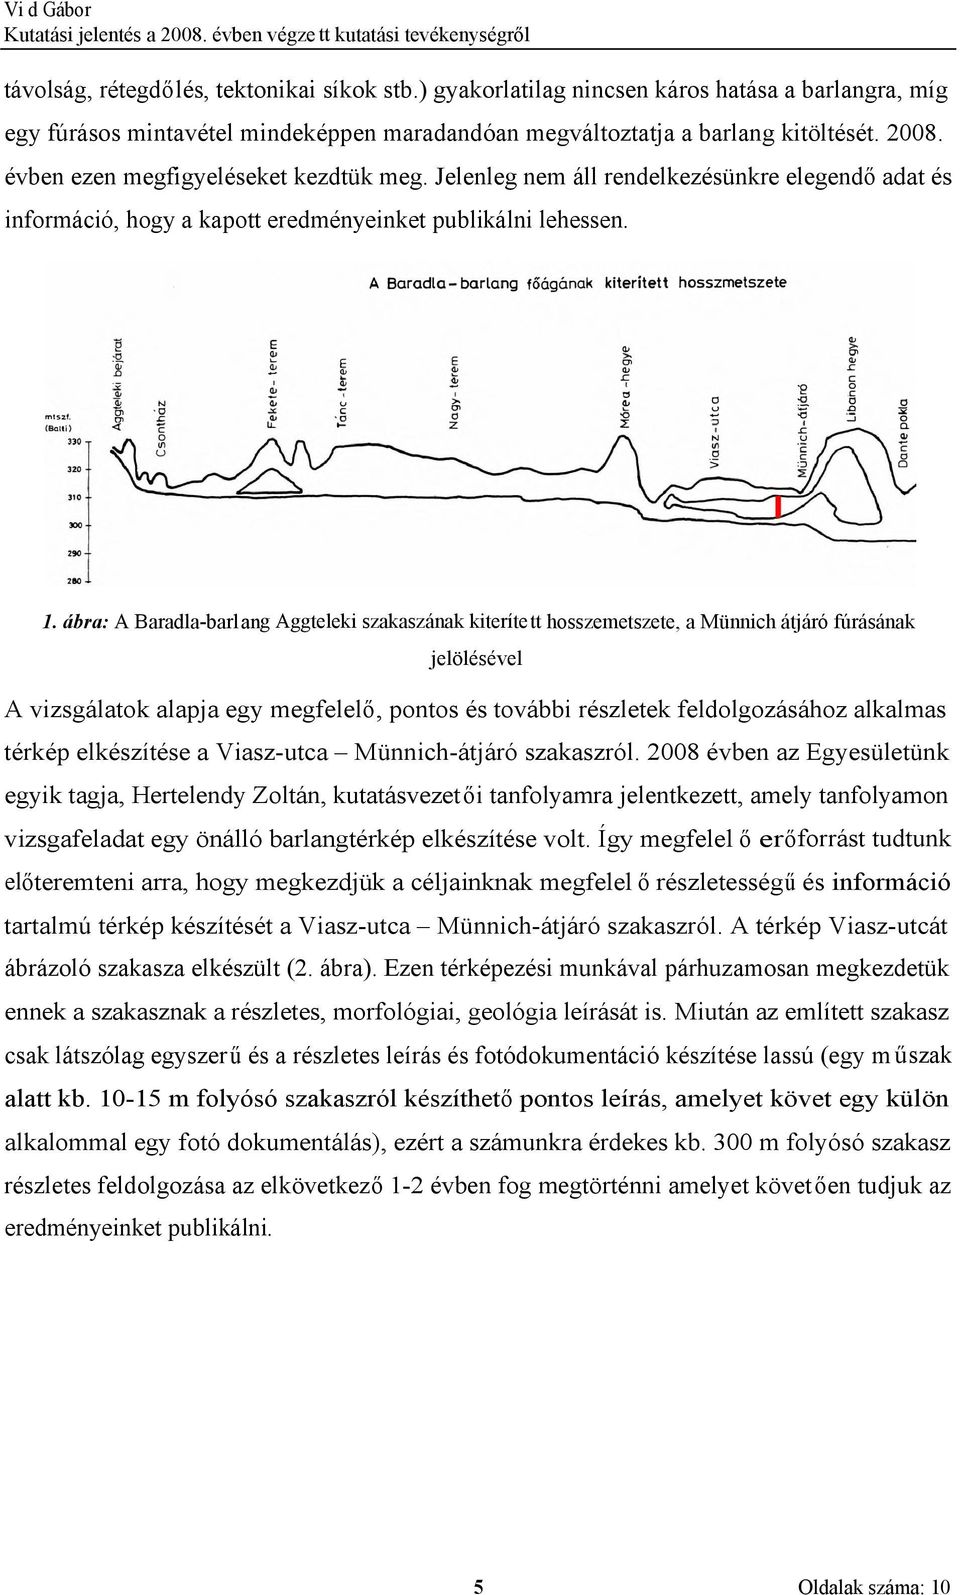 ábra: A Baradla-barlang Aggteleki szakaszának kiterített hosszemetszete, a Münnich átjáró fúrásának jelölésével A vizsgálatok alapja egy megfelelő, pontos és további részletek feldolgozásához